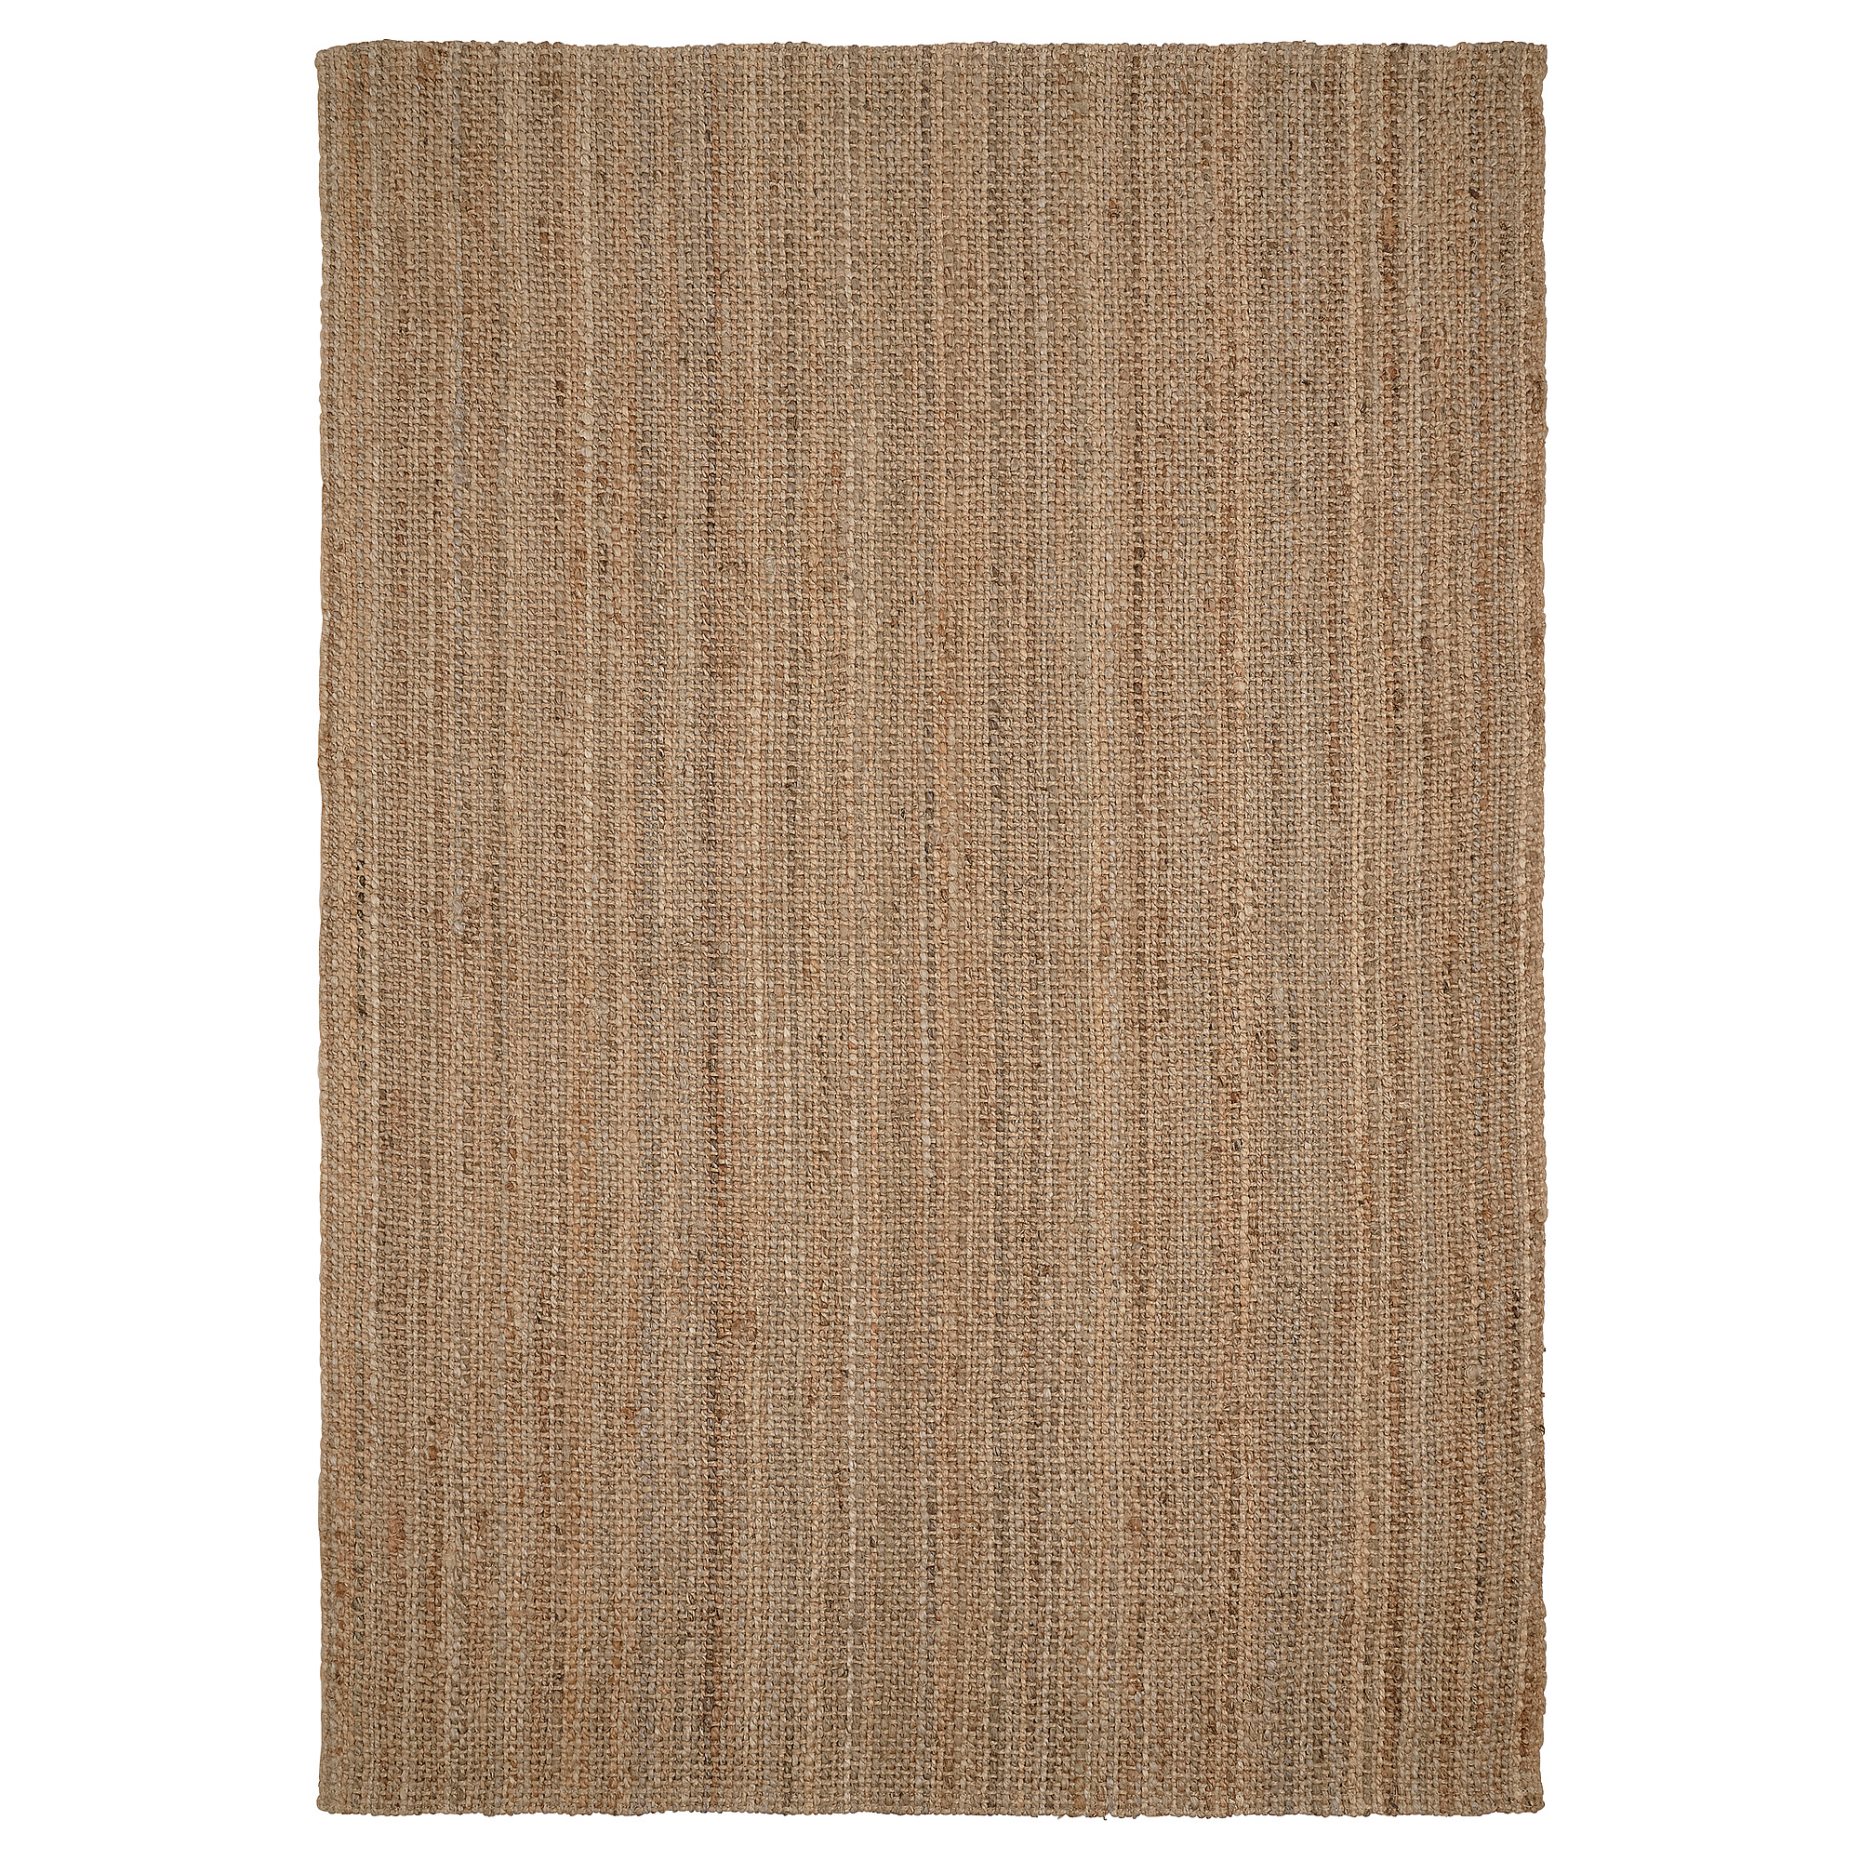 STRÖG, χαλί χαμηλή πλέξη, 155x220 cm, 705.270.51